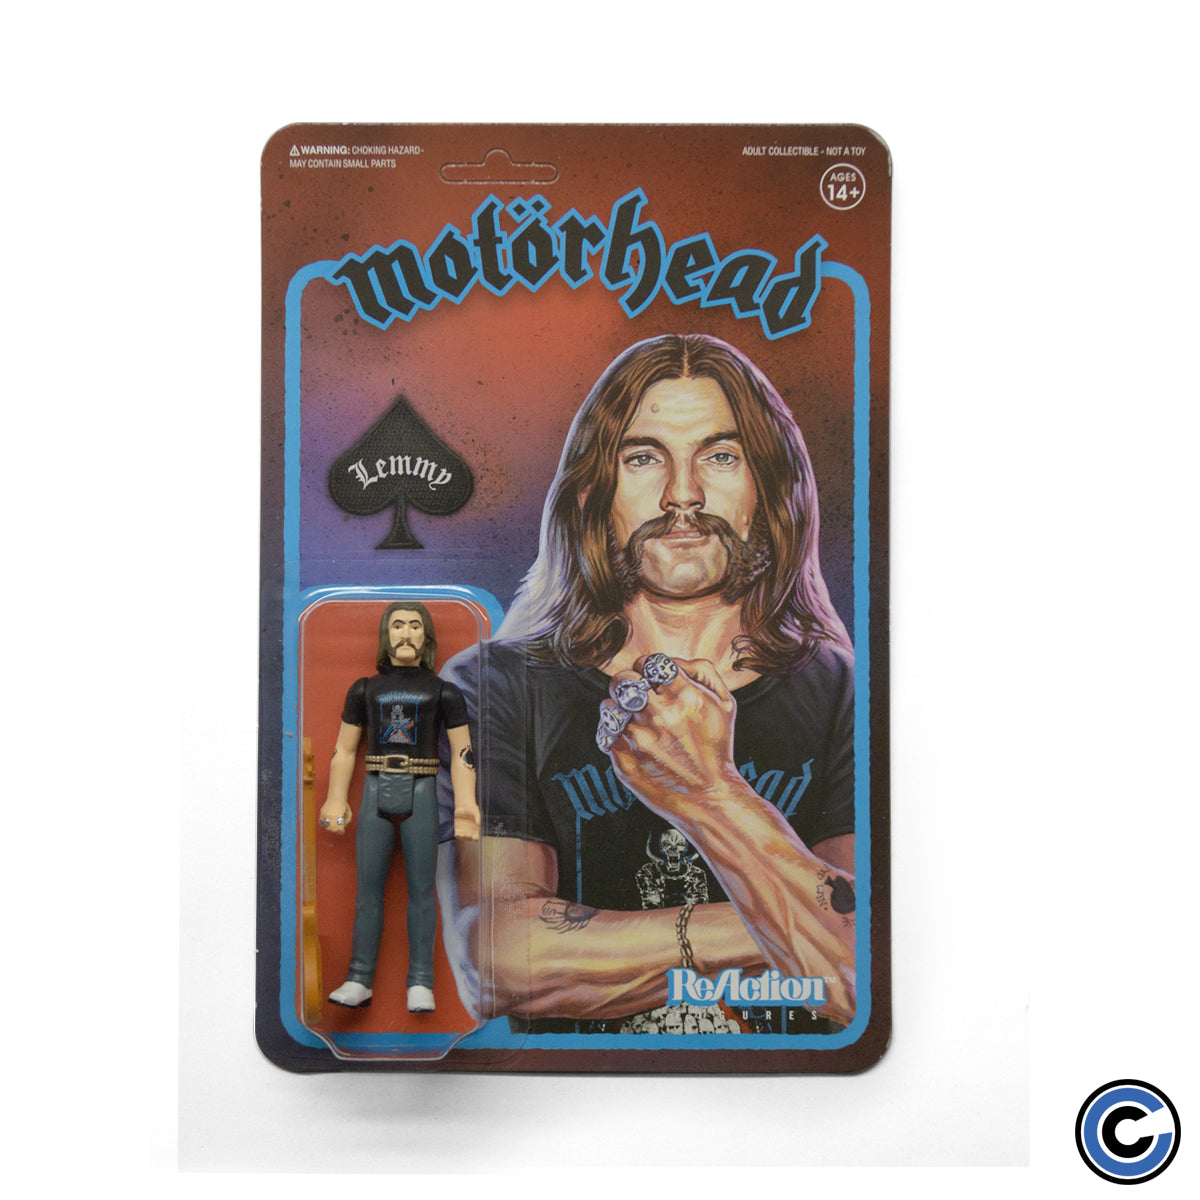 Motorhead "Lemmy (Recolor)" Action Figure